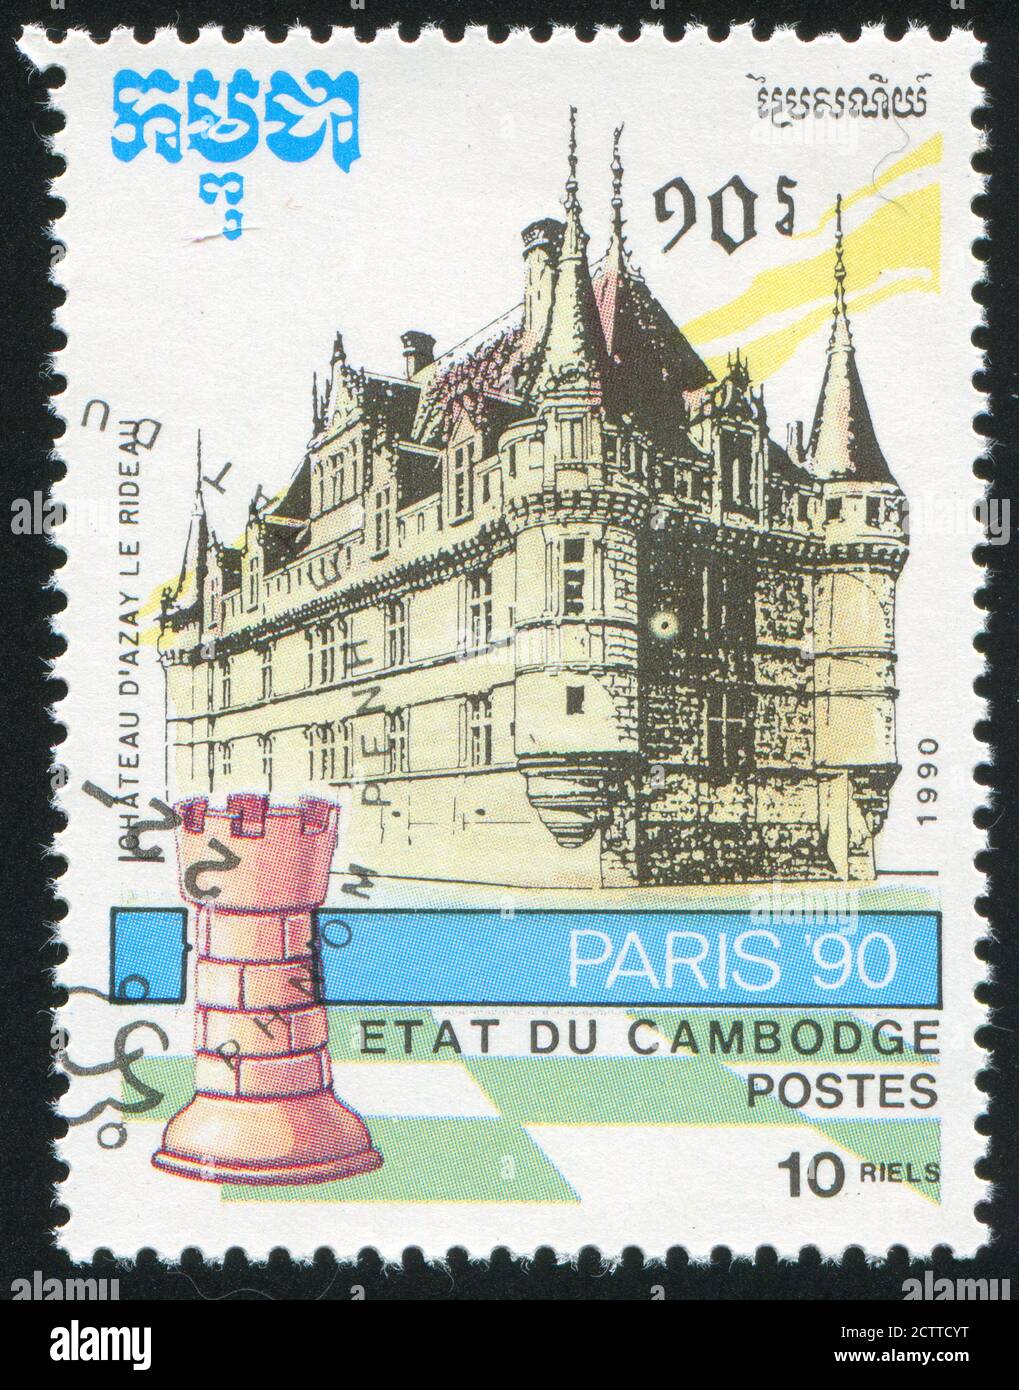 KAMBODSCHA - UM 1990: Briefmarke gedruckt von Kambodscha, zeigt Schachstück und Schloss, um 1990 Stockfoto